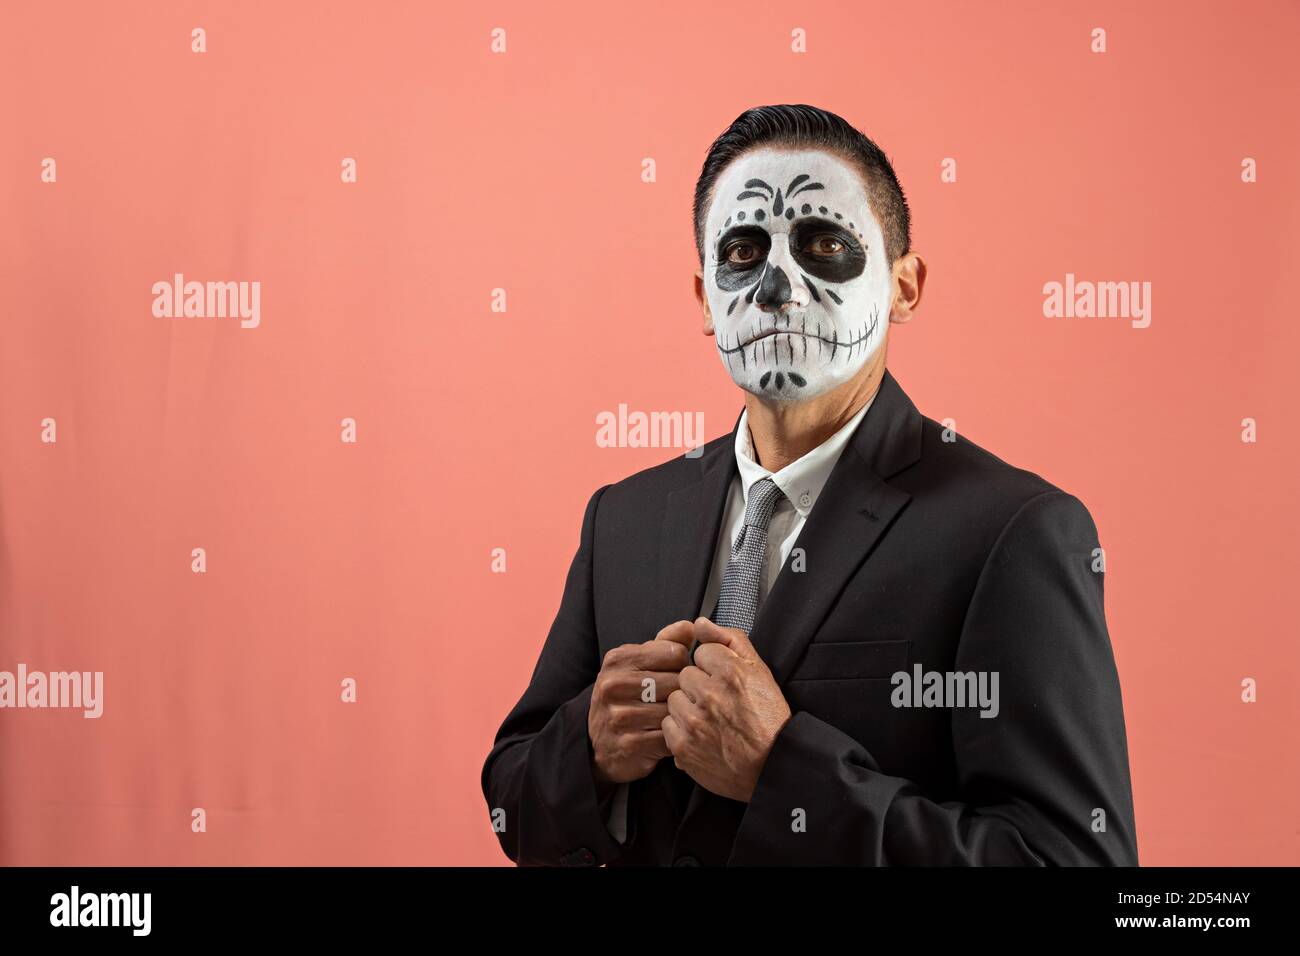 Hombre disfrazado de catrin con traje negro y corbata gris, posando con  fondo liso Fotografía de stock - Alamy